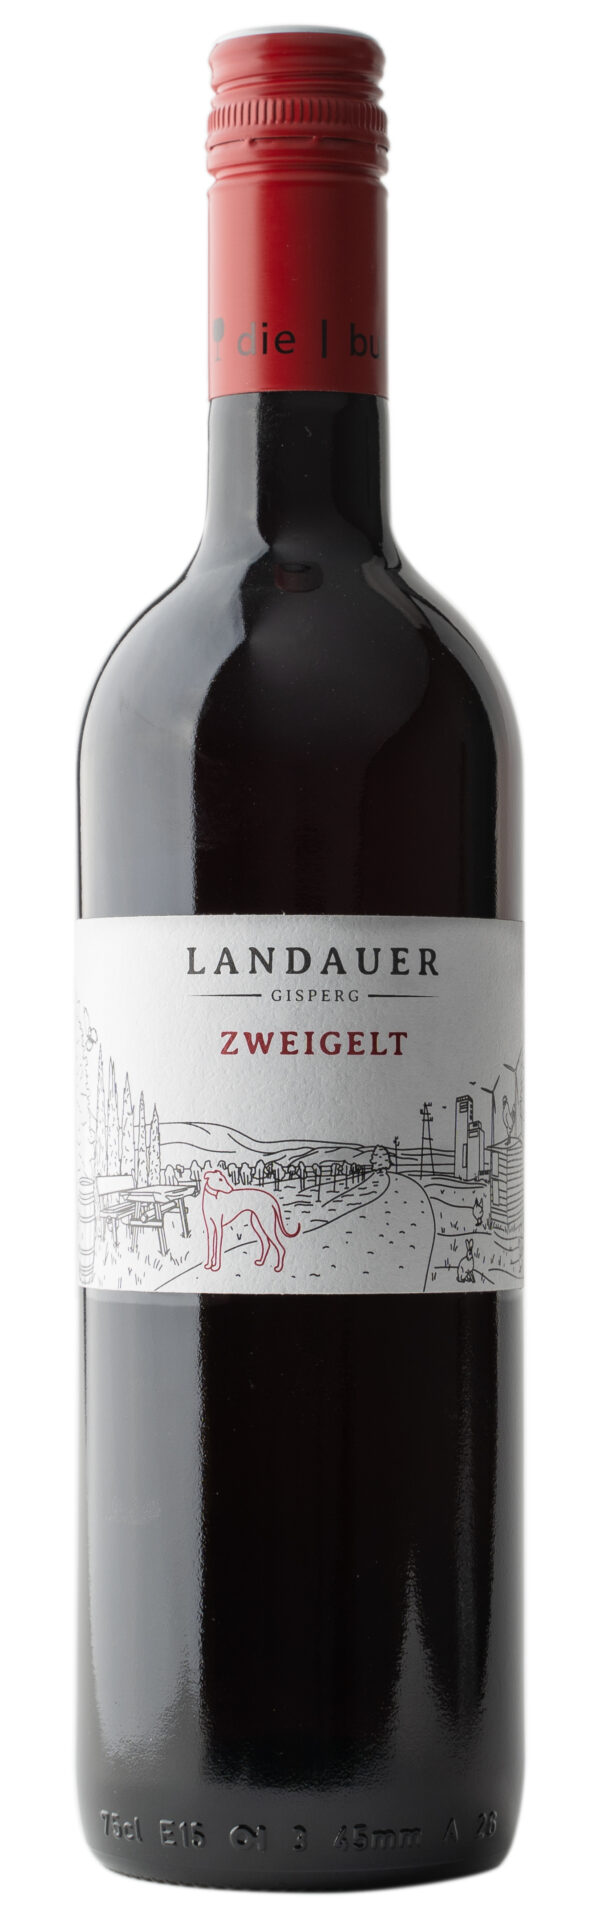 Landauer-Gisperg; Winzerhof Zweigelt Klassik; Landauer-Gisperg 6 x 0,75l